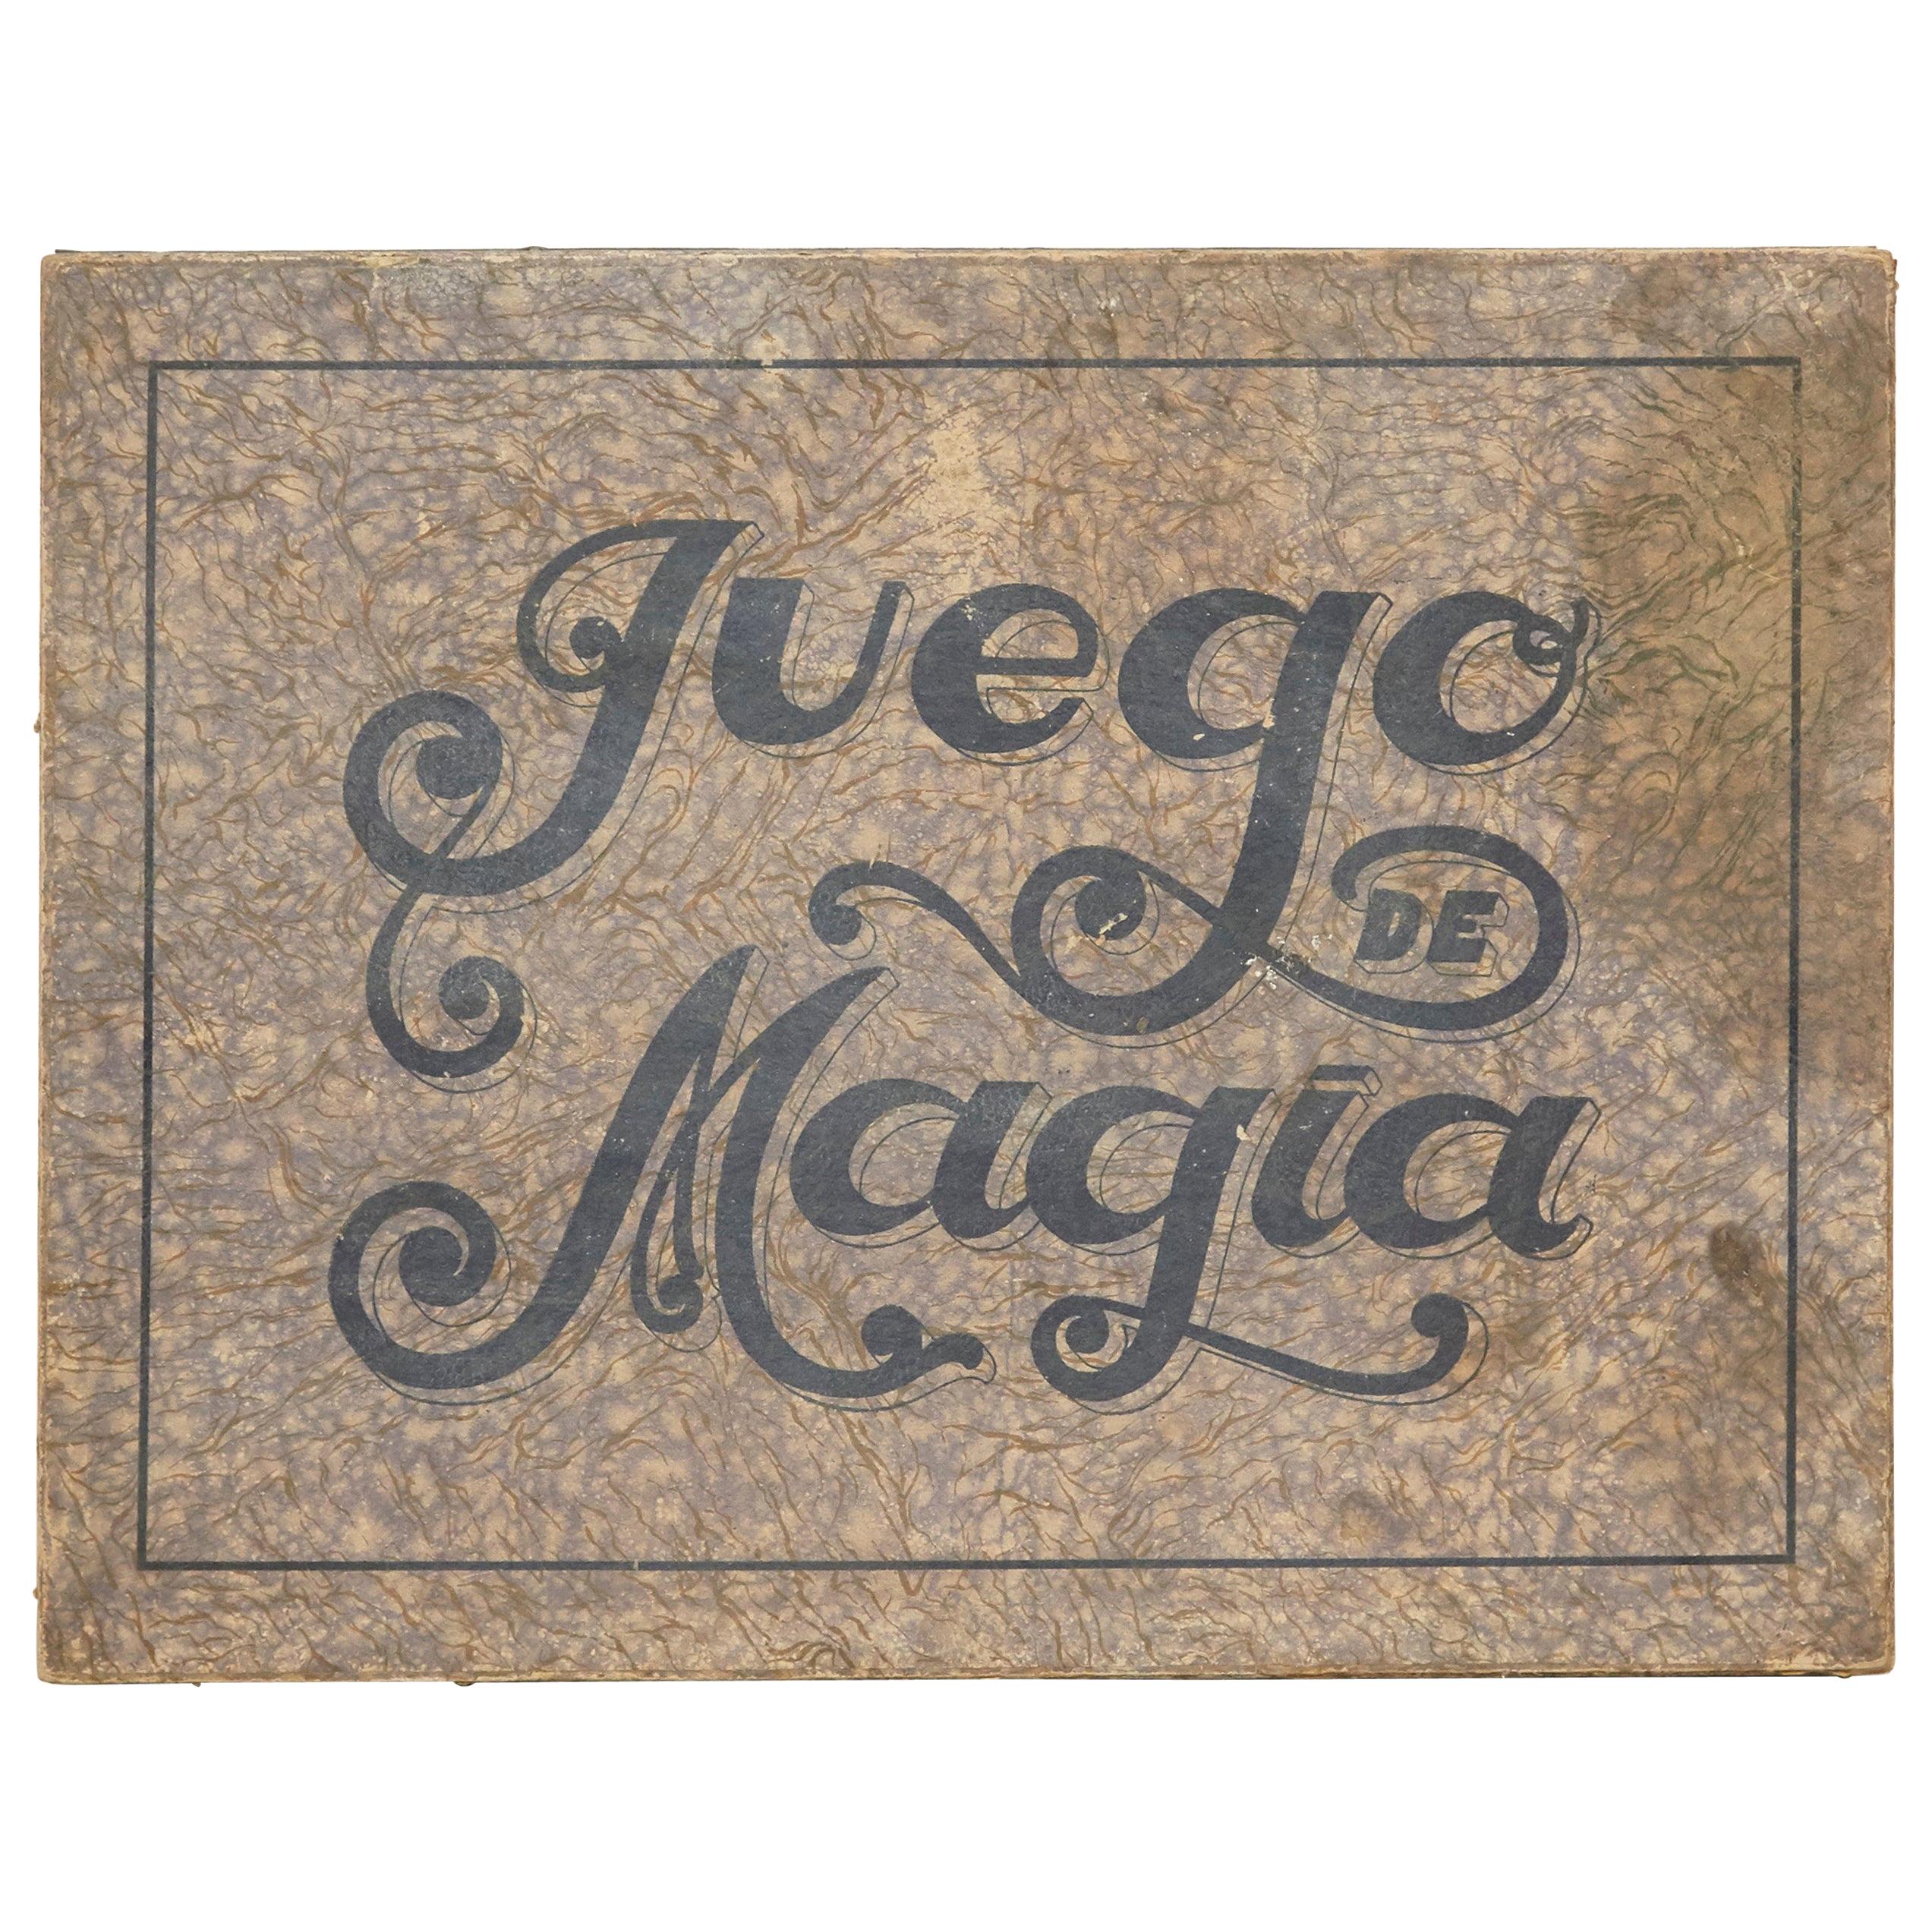 Rare First Edition Magic Game of "Juego de Magia Borras" 1933